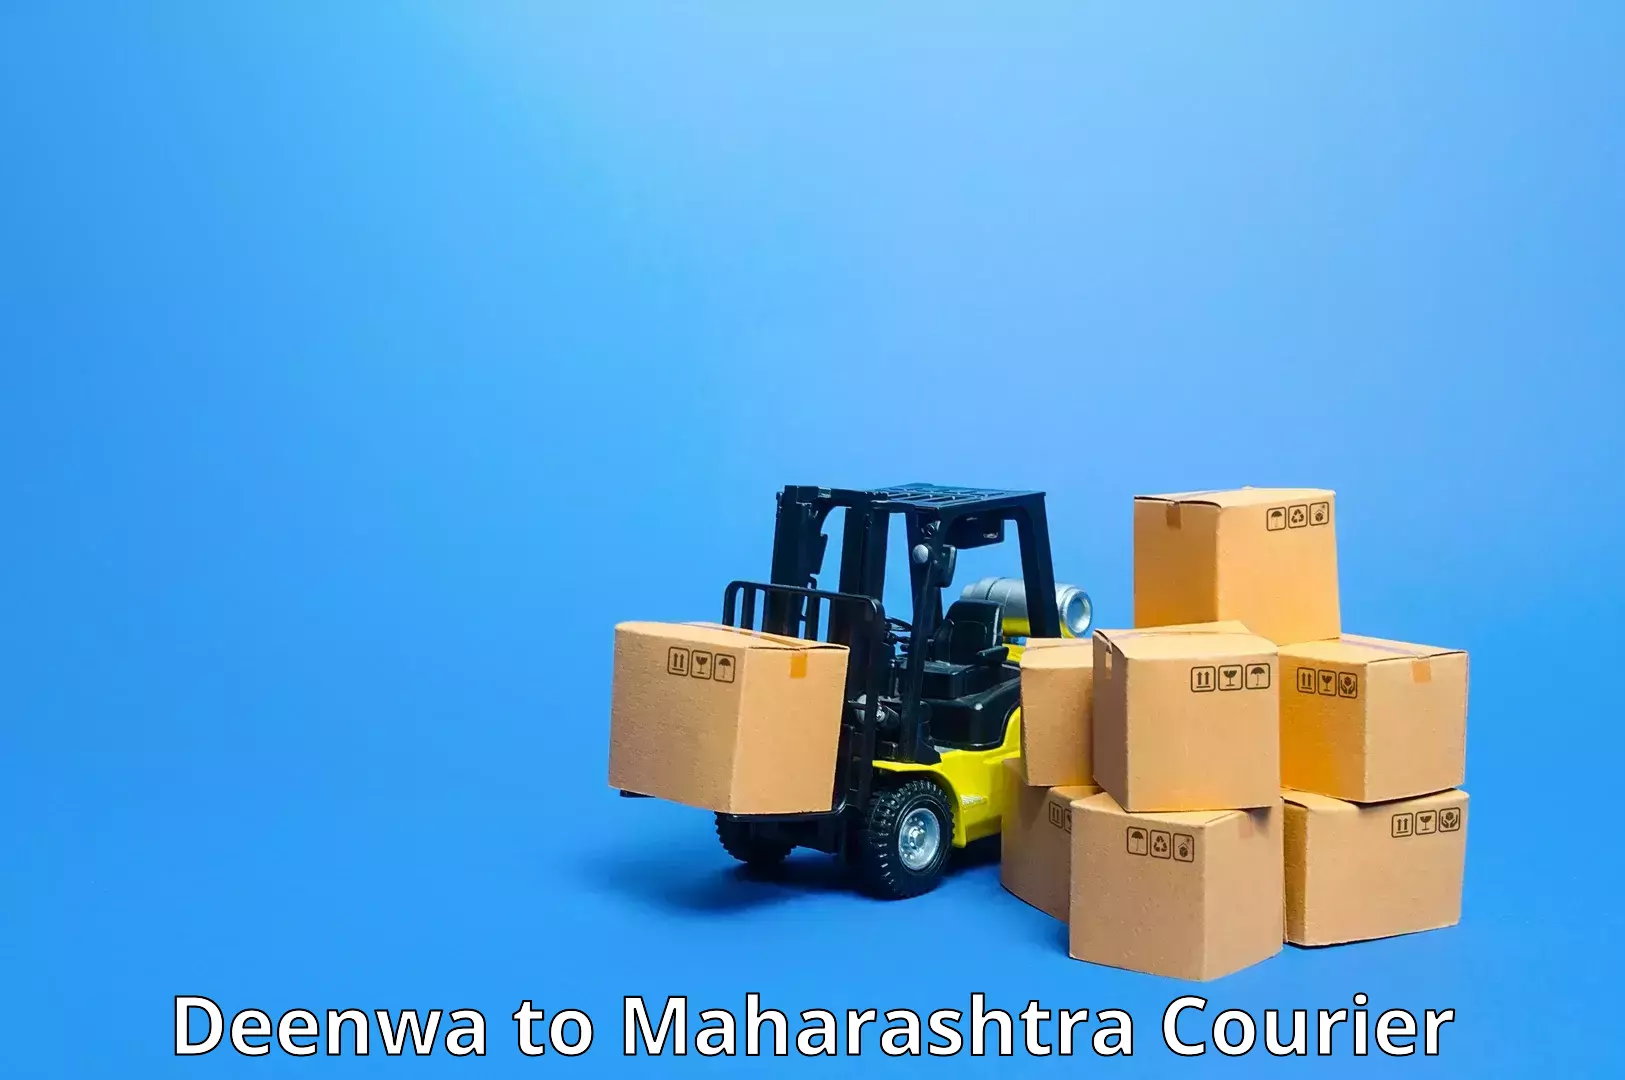 Nationwide shipping capabilities Deenwa to Omerga